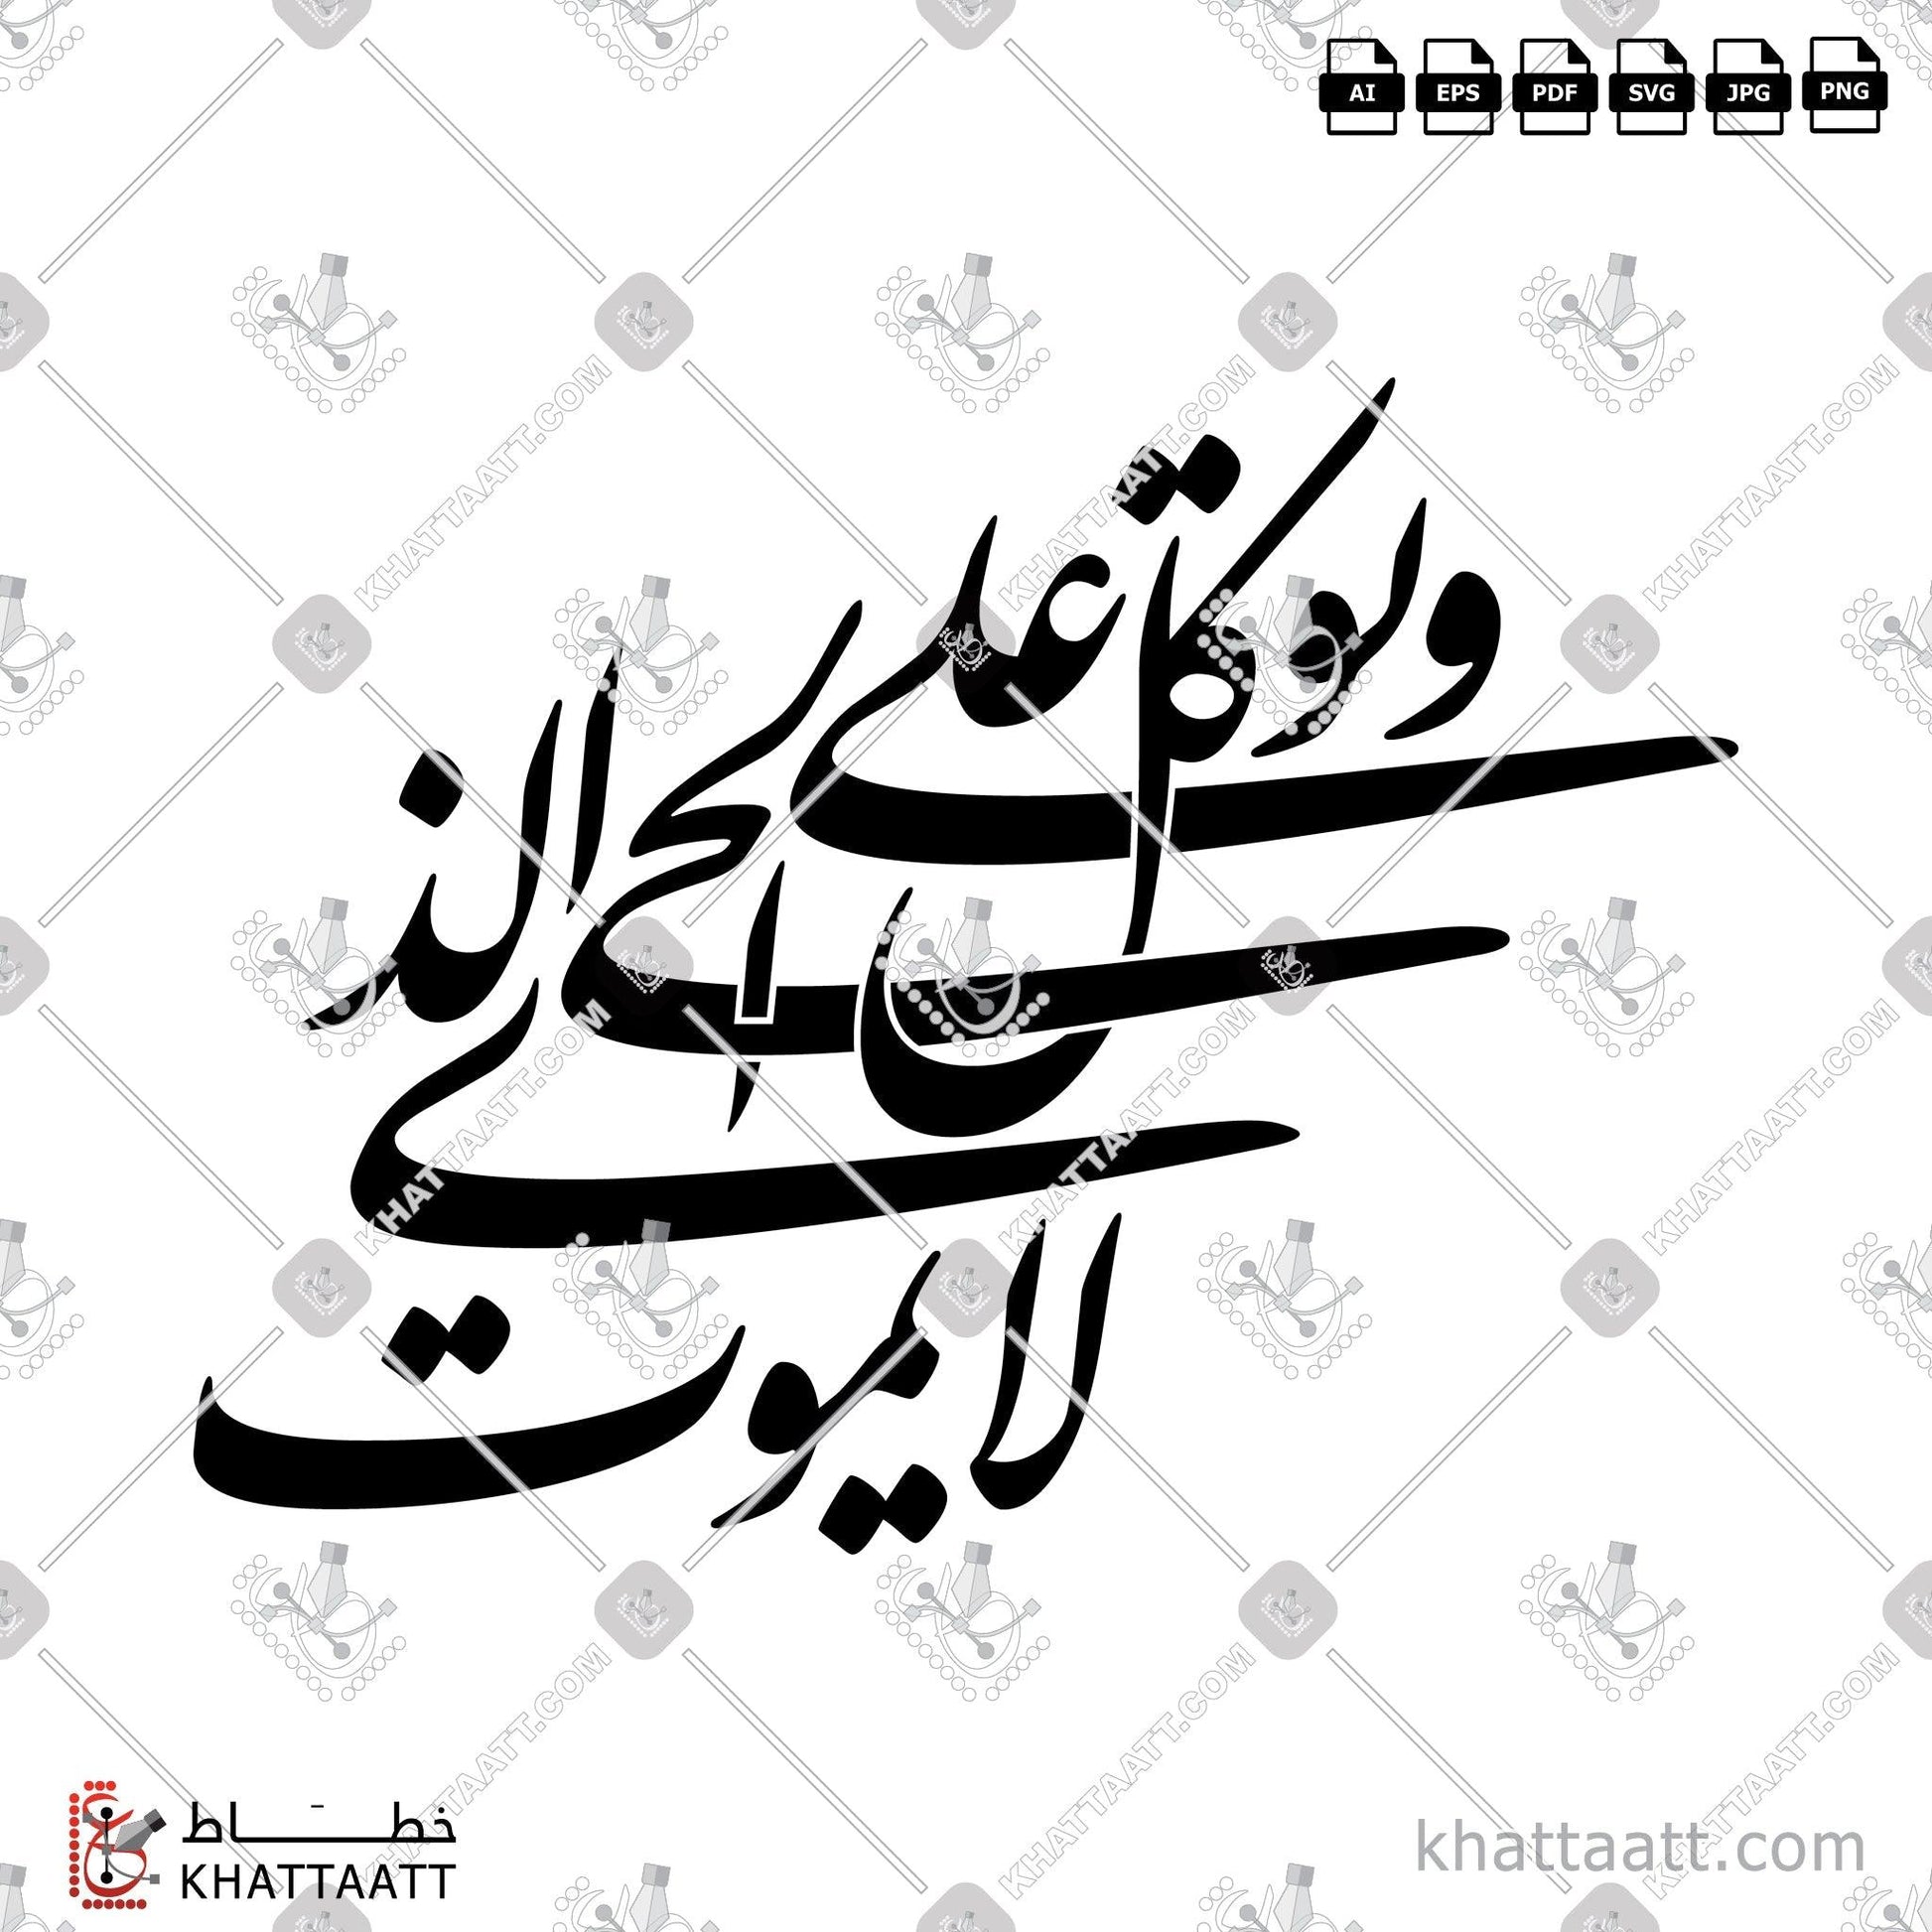 Arabic Calligraphy Vector, Farsi Script, Quran, Surat Al-Furqaan, الخط العربي, الخط الفارسي, القرآن الكريم, سورة الفرقان KHATTAATT